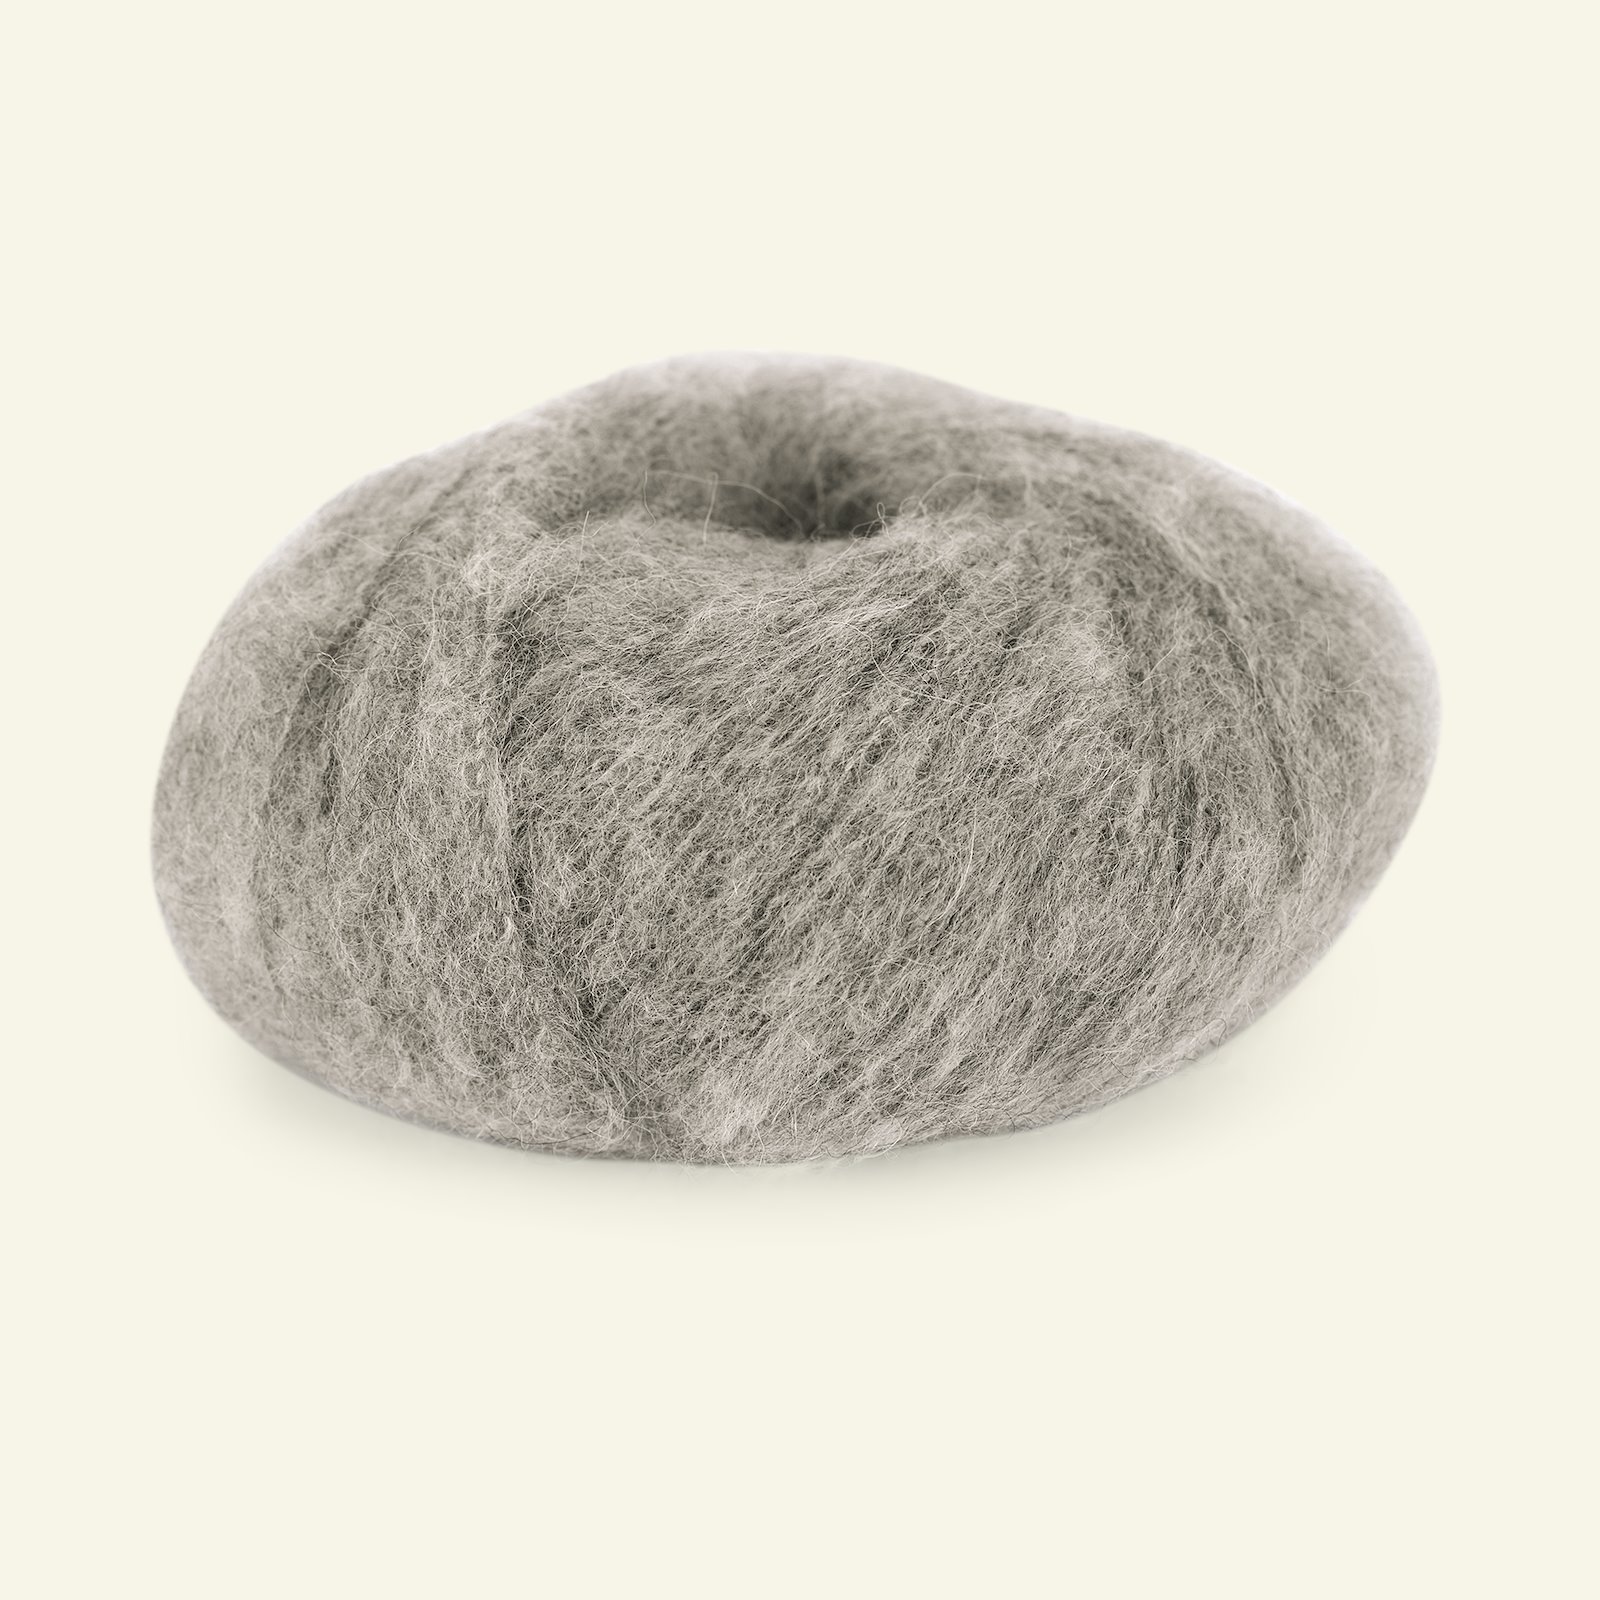 Du Store Alpakka, børsted alpakkagarn "Faerytale", lys gråbrun (758) 90000592_pack_b